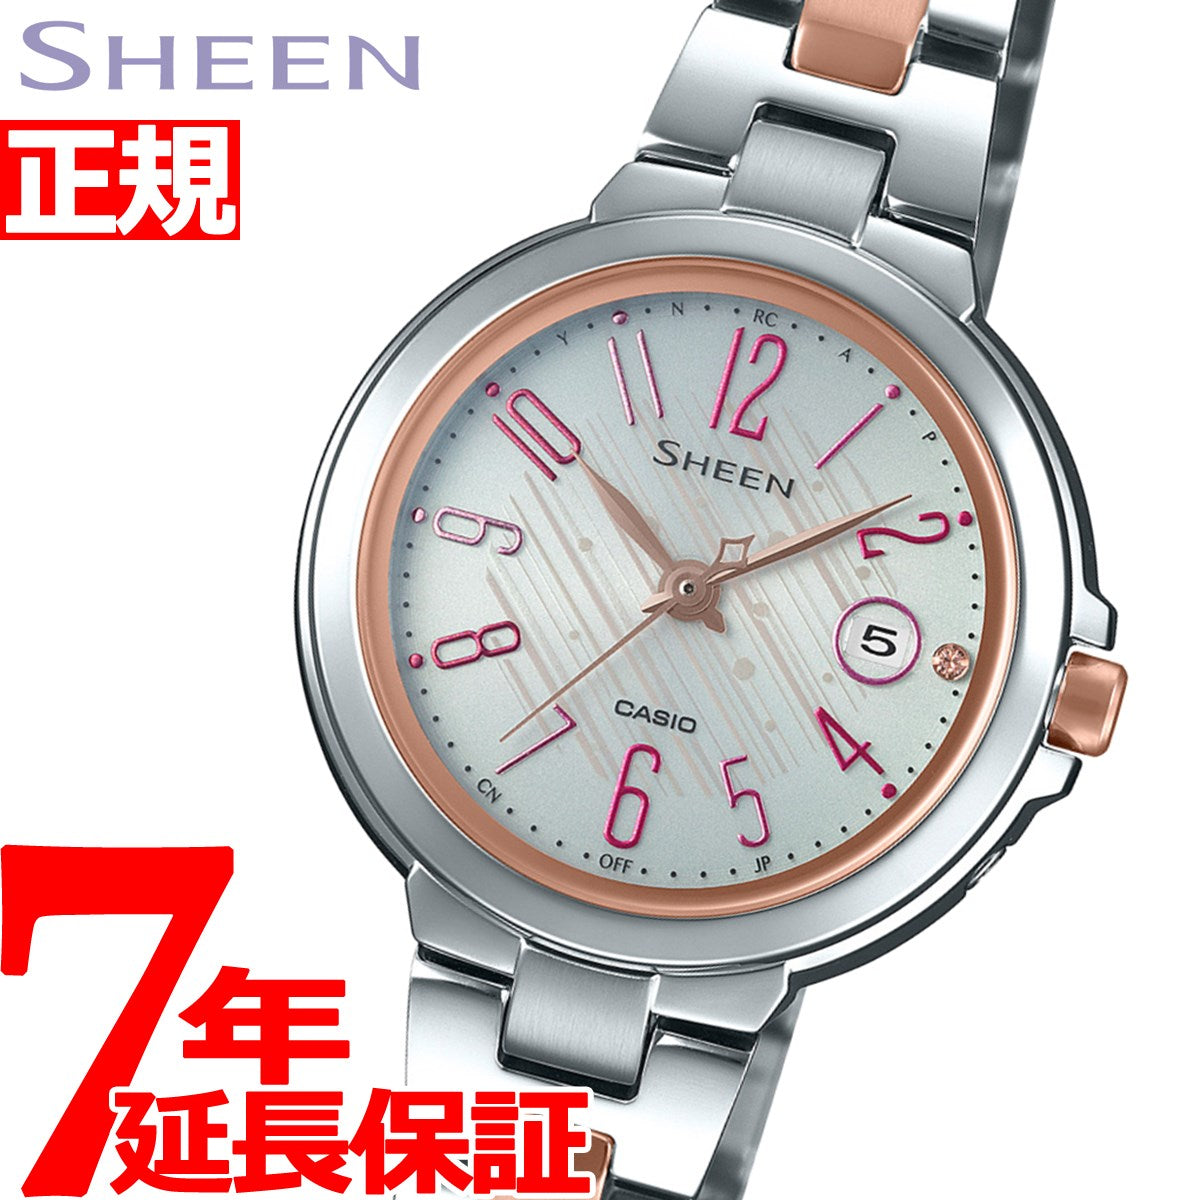 カシオ シーン CASIO SHEEN 電波 ソーラー 電波時計 腕時計